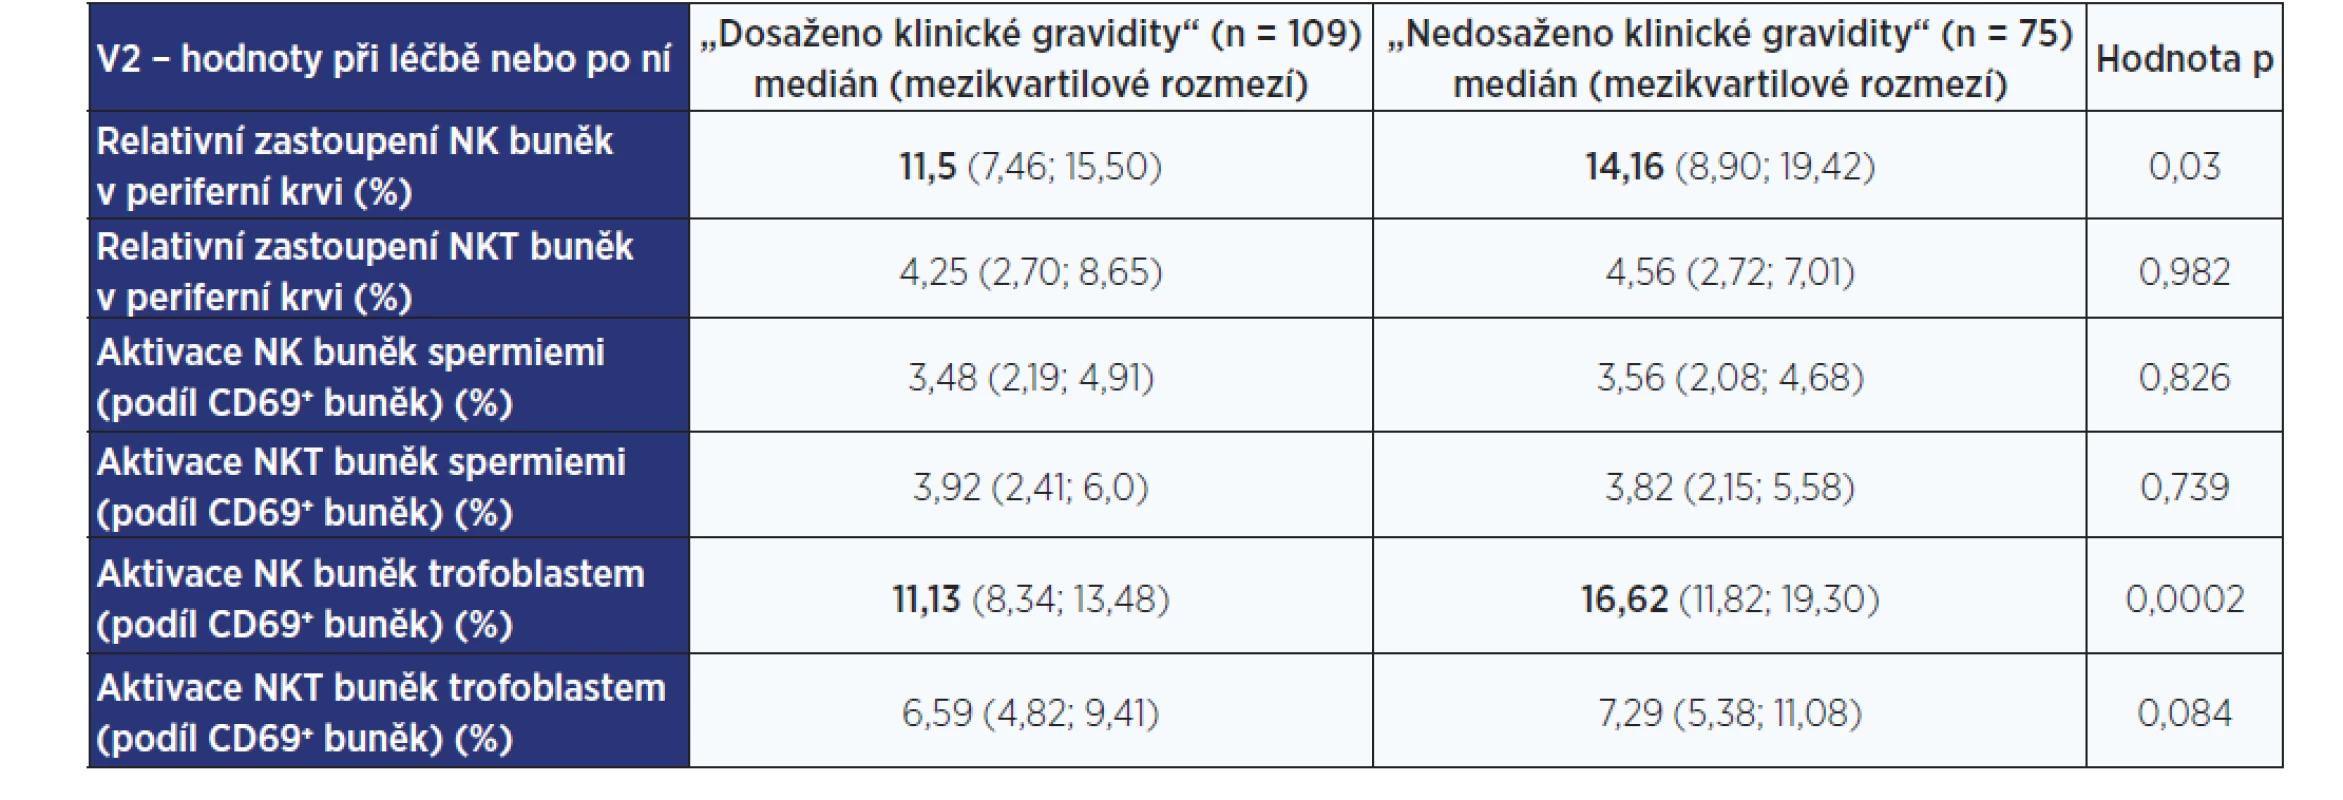 Laboratorní nálezy ve skupinách žen s klinickou graviditou a bez klinické gravidity – hodnoty při nebo po imunointervenční léčbě (V2)